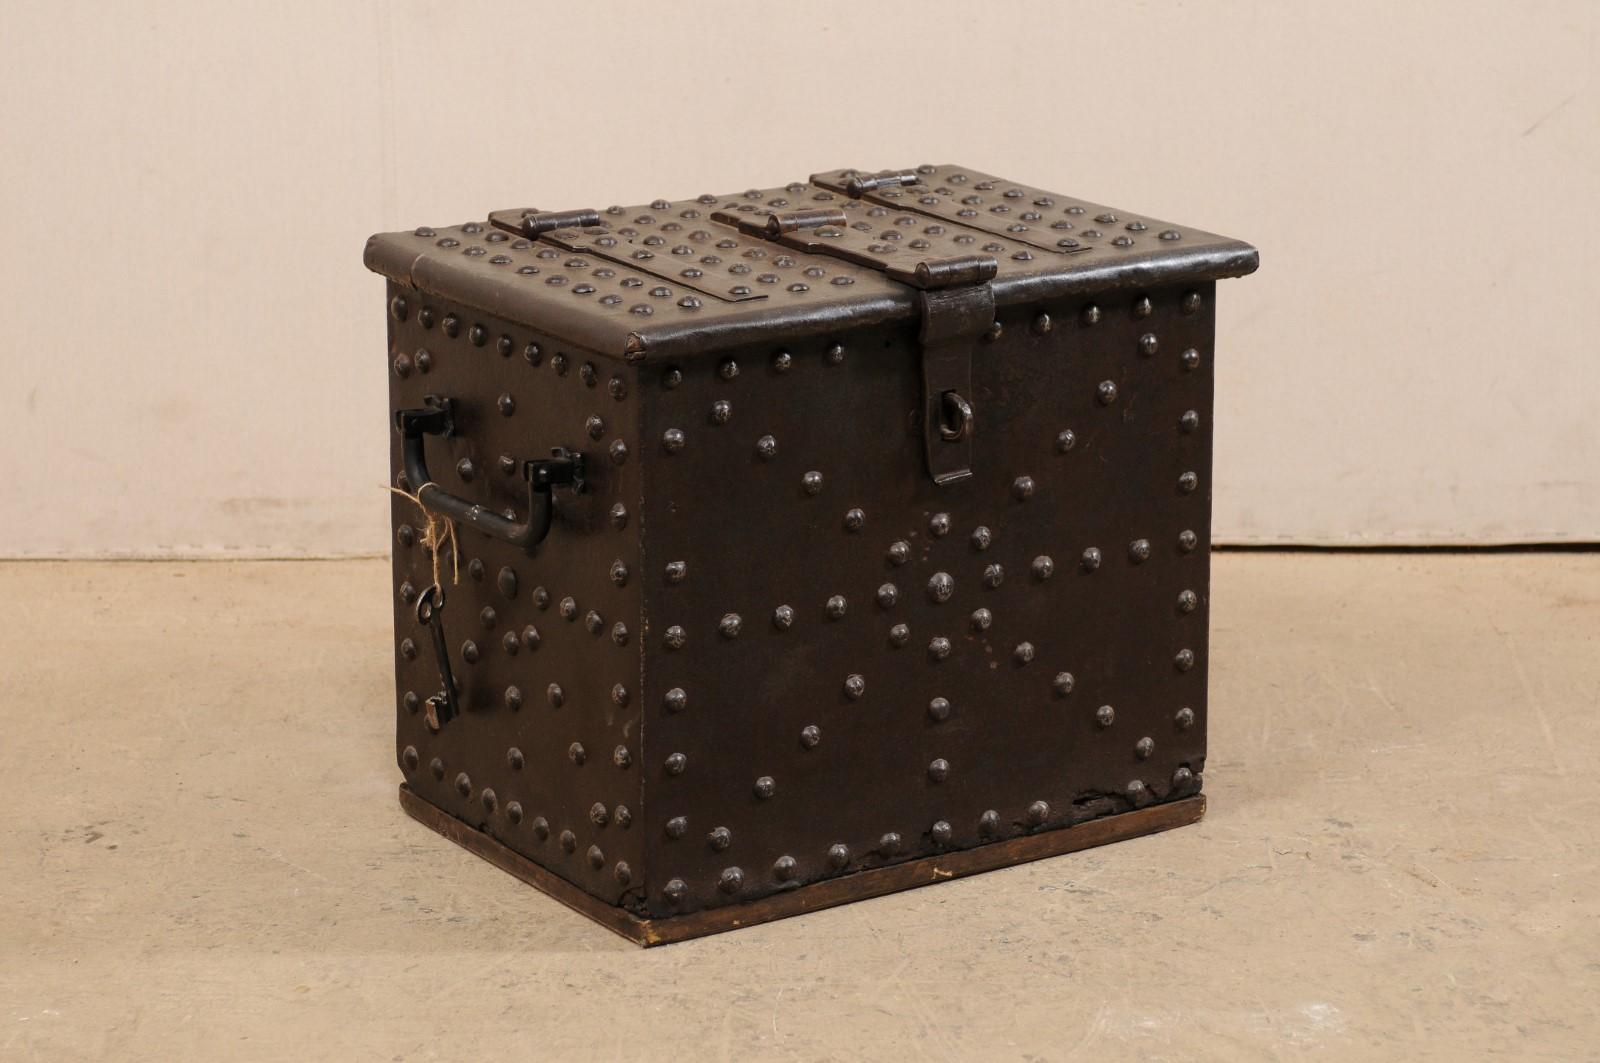 Une boîte forte espagnole du 18ème siècle. Ce coffre-fort antique est construit en bois recouvert de fer et est joliment orné d'une garniture de clous en fer en forme de dôme sur le dessus, le devant et les côtés. Cette pièce conserve sa clé